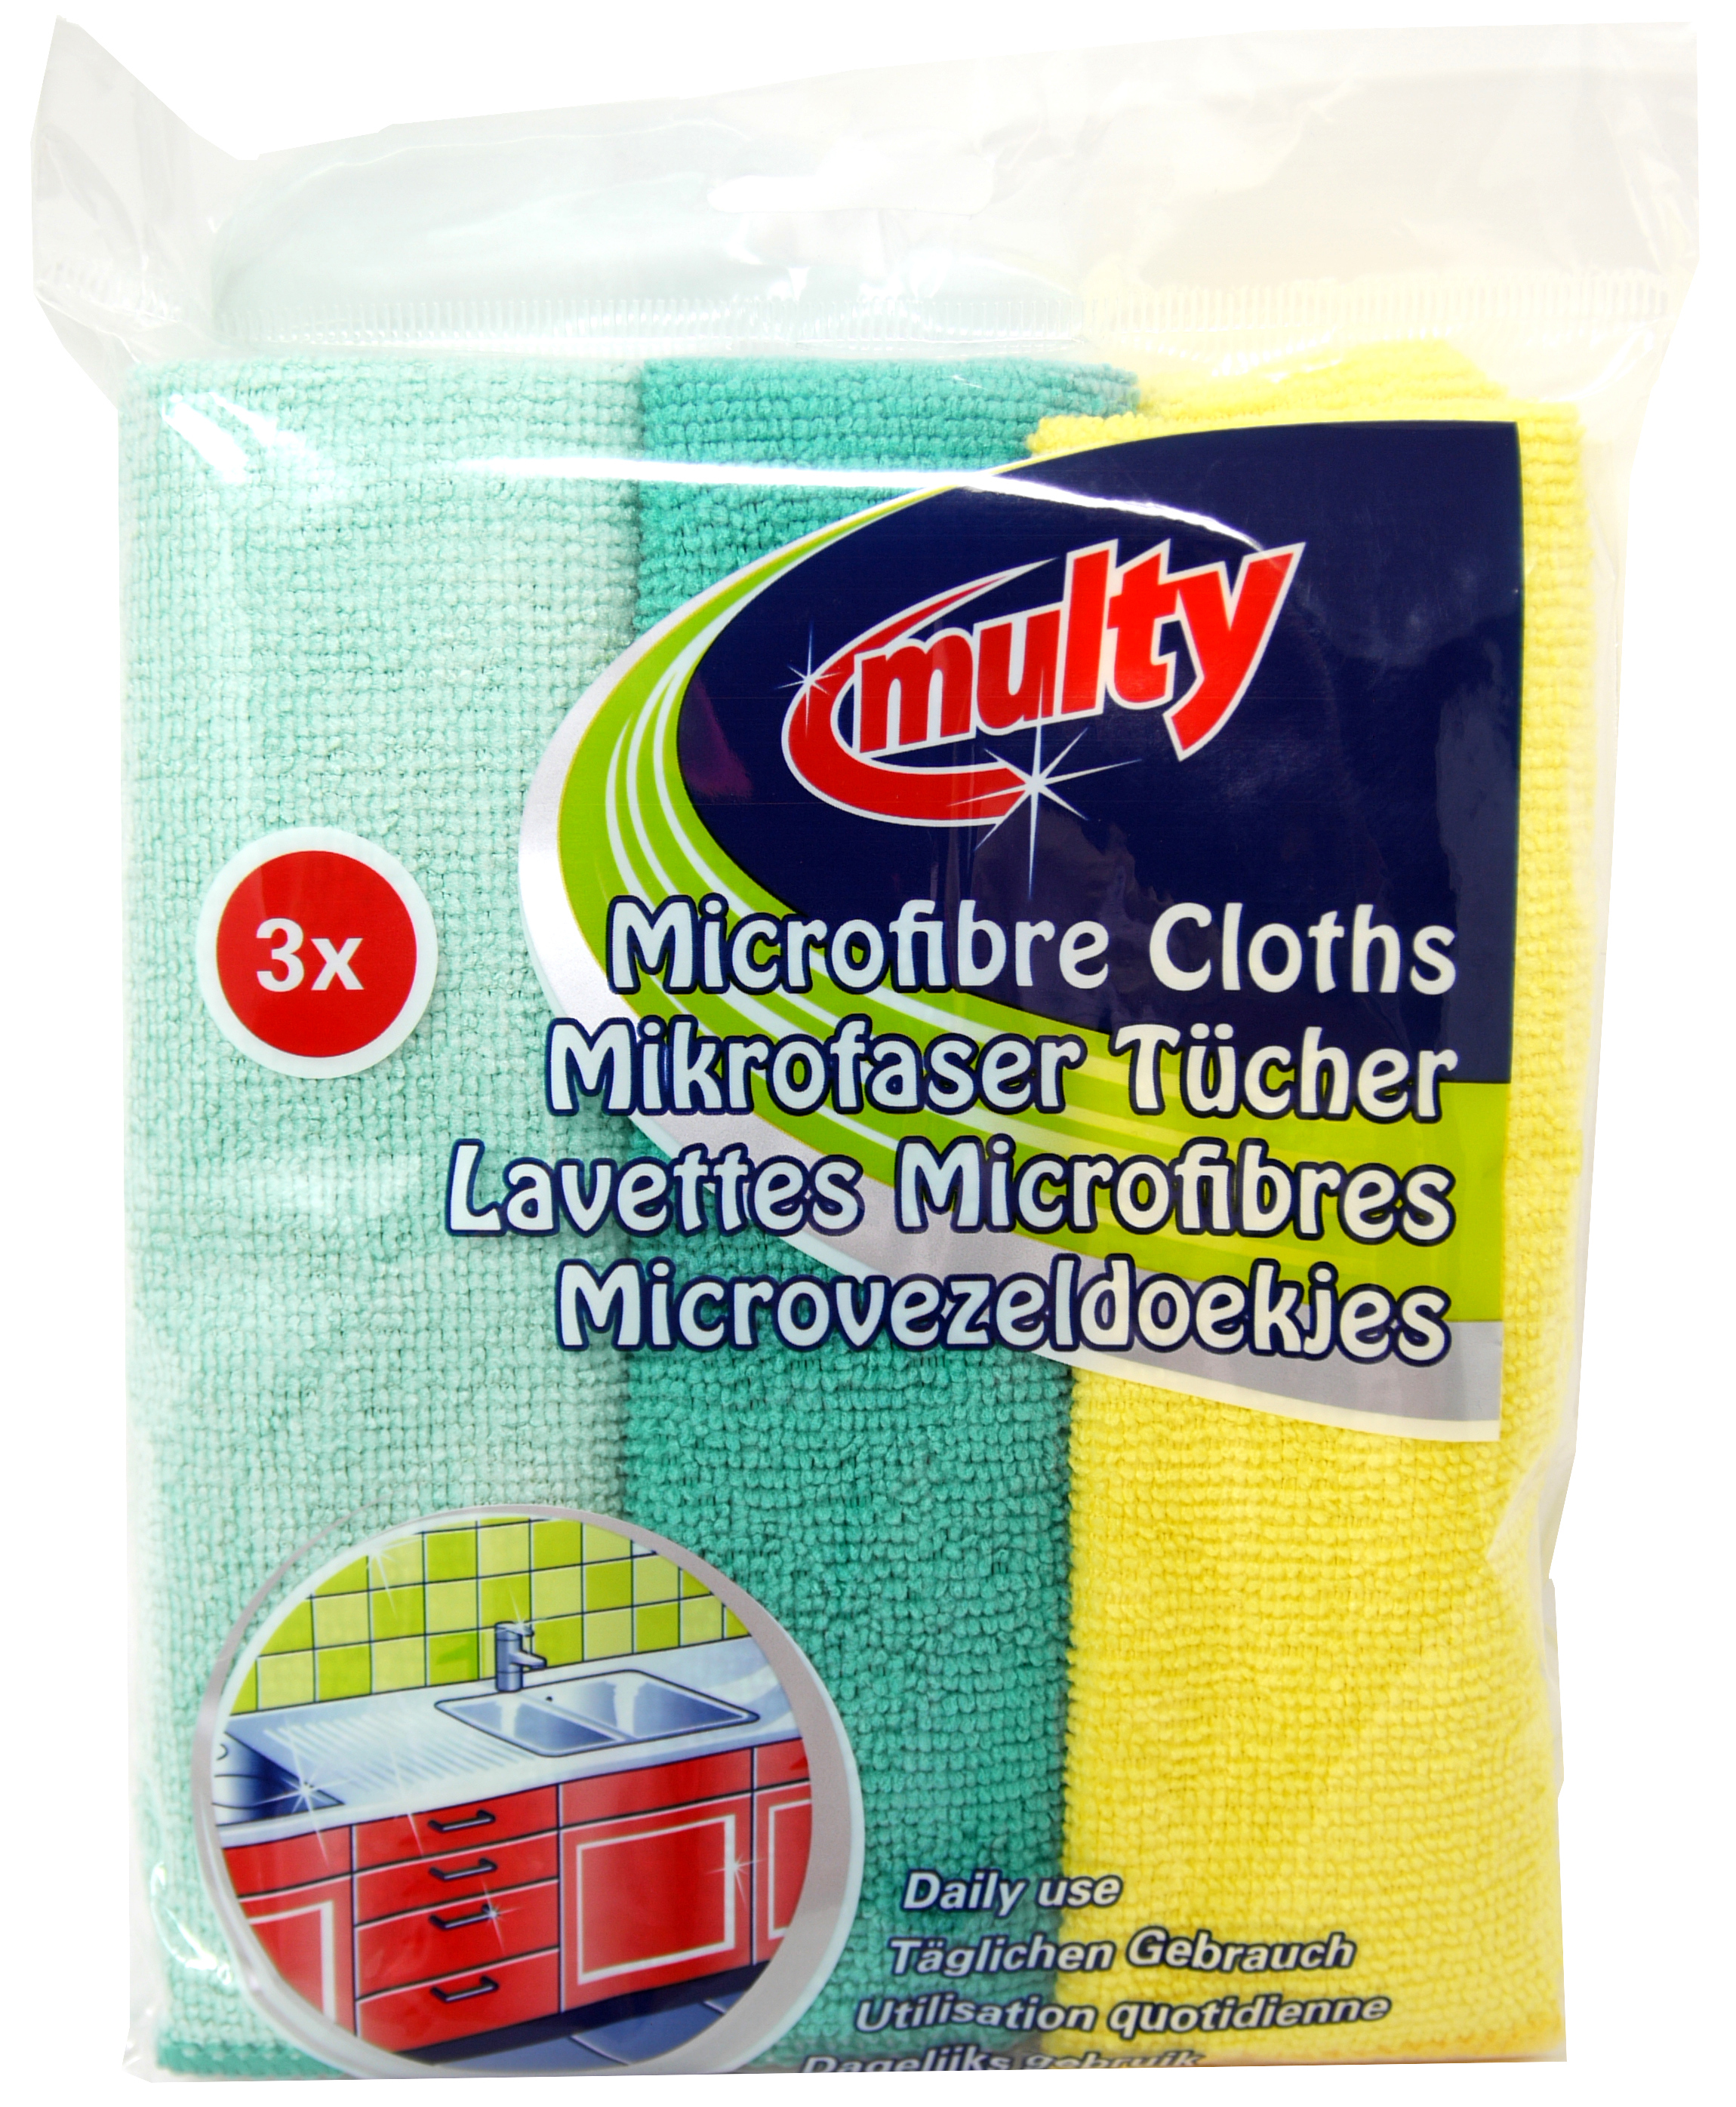 01213 - Multy Microfasertücher 3er